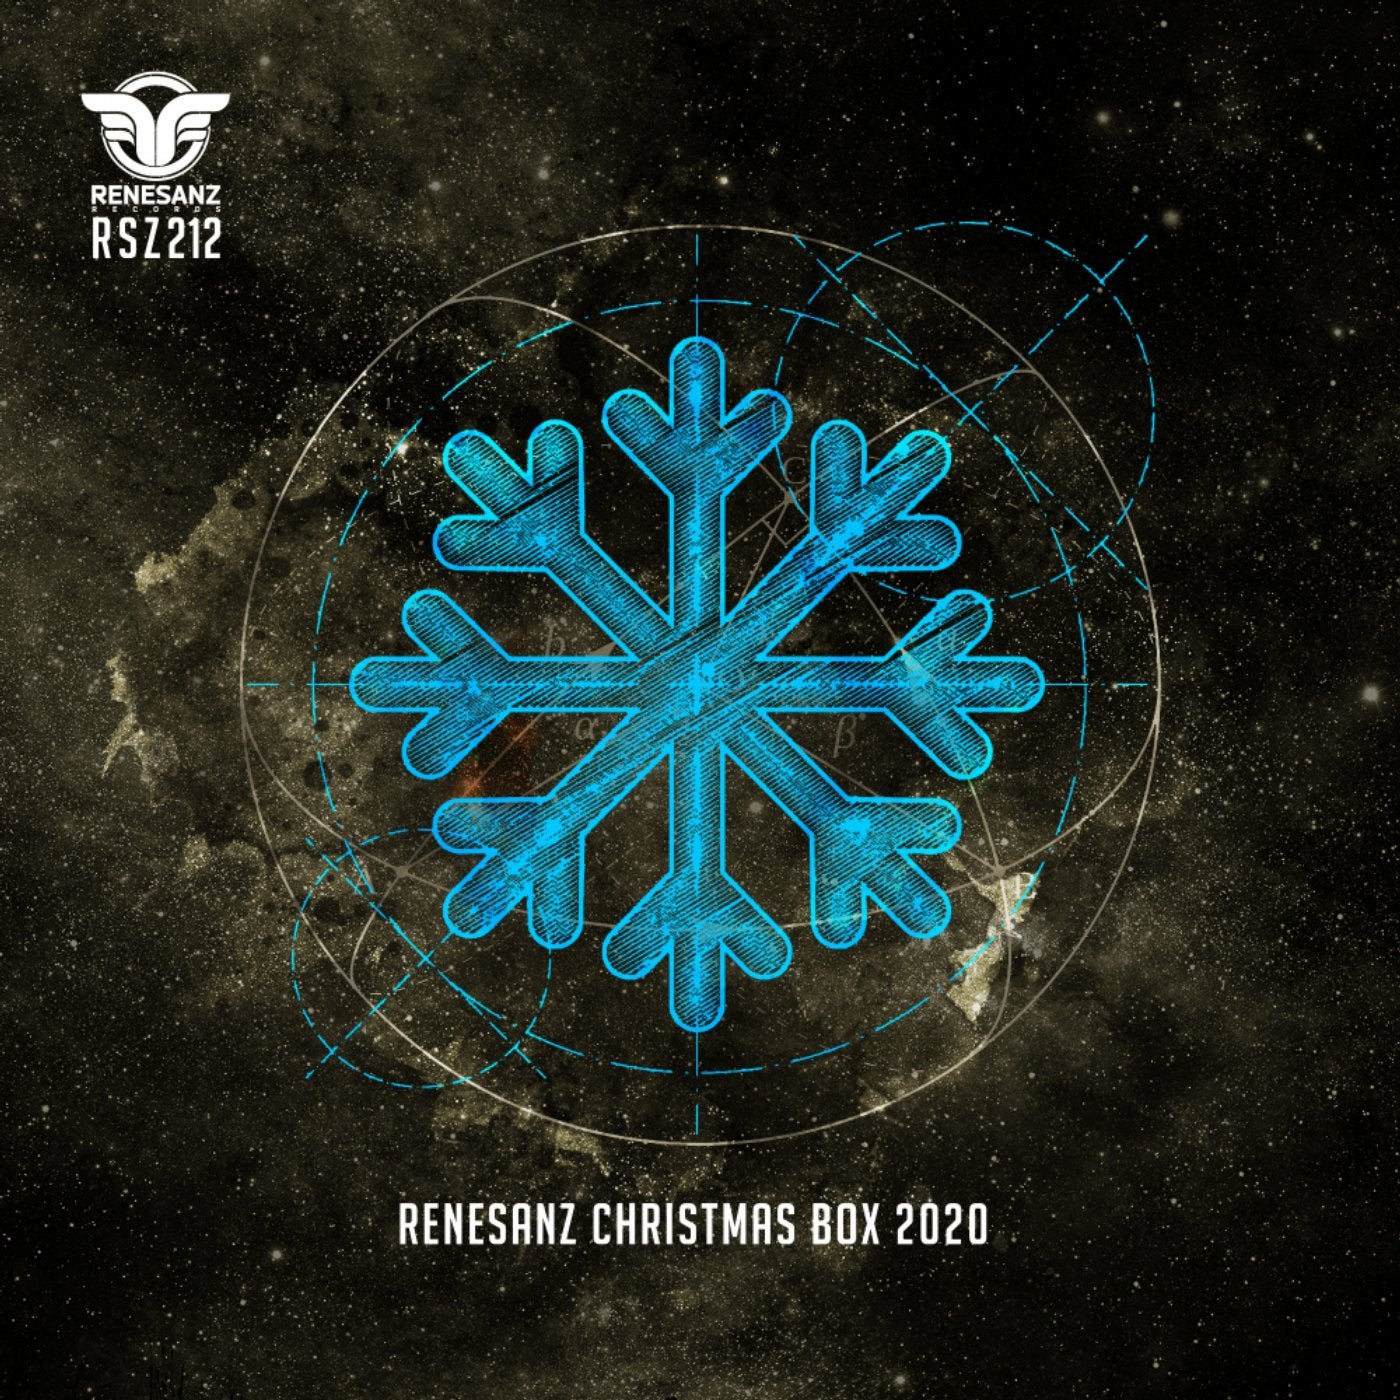 Renesanz Christmas Box 2020